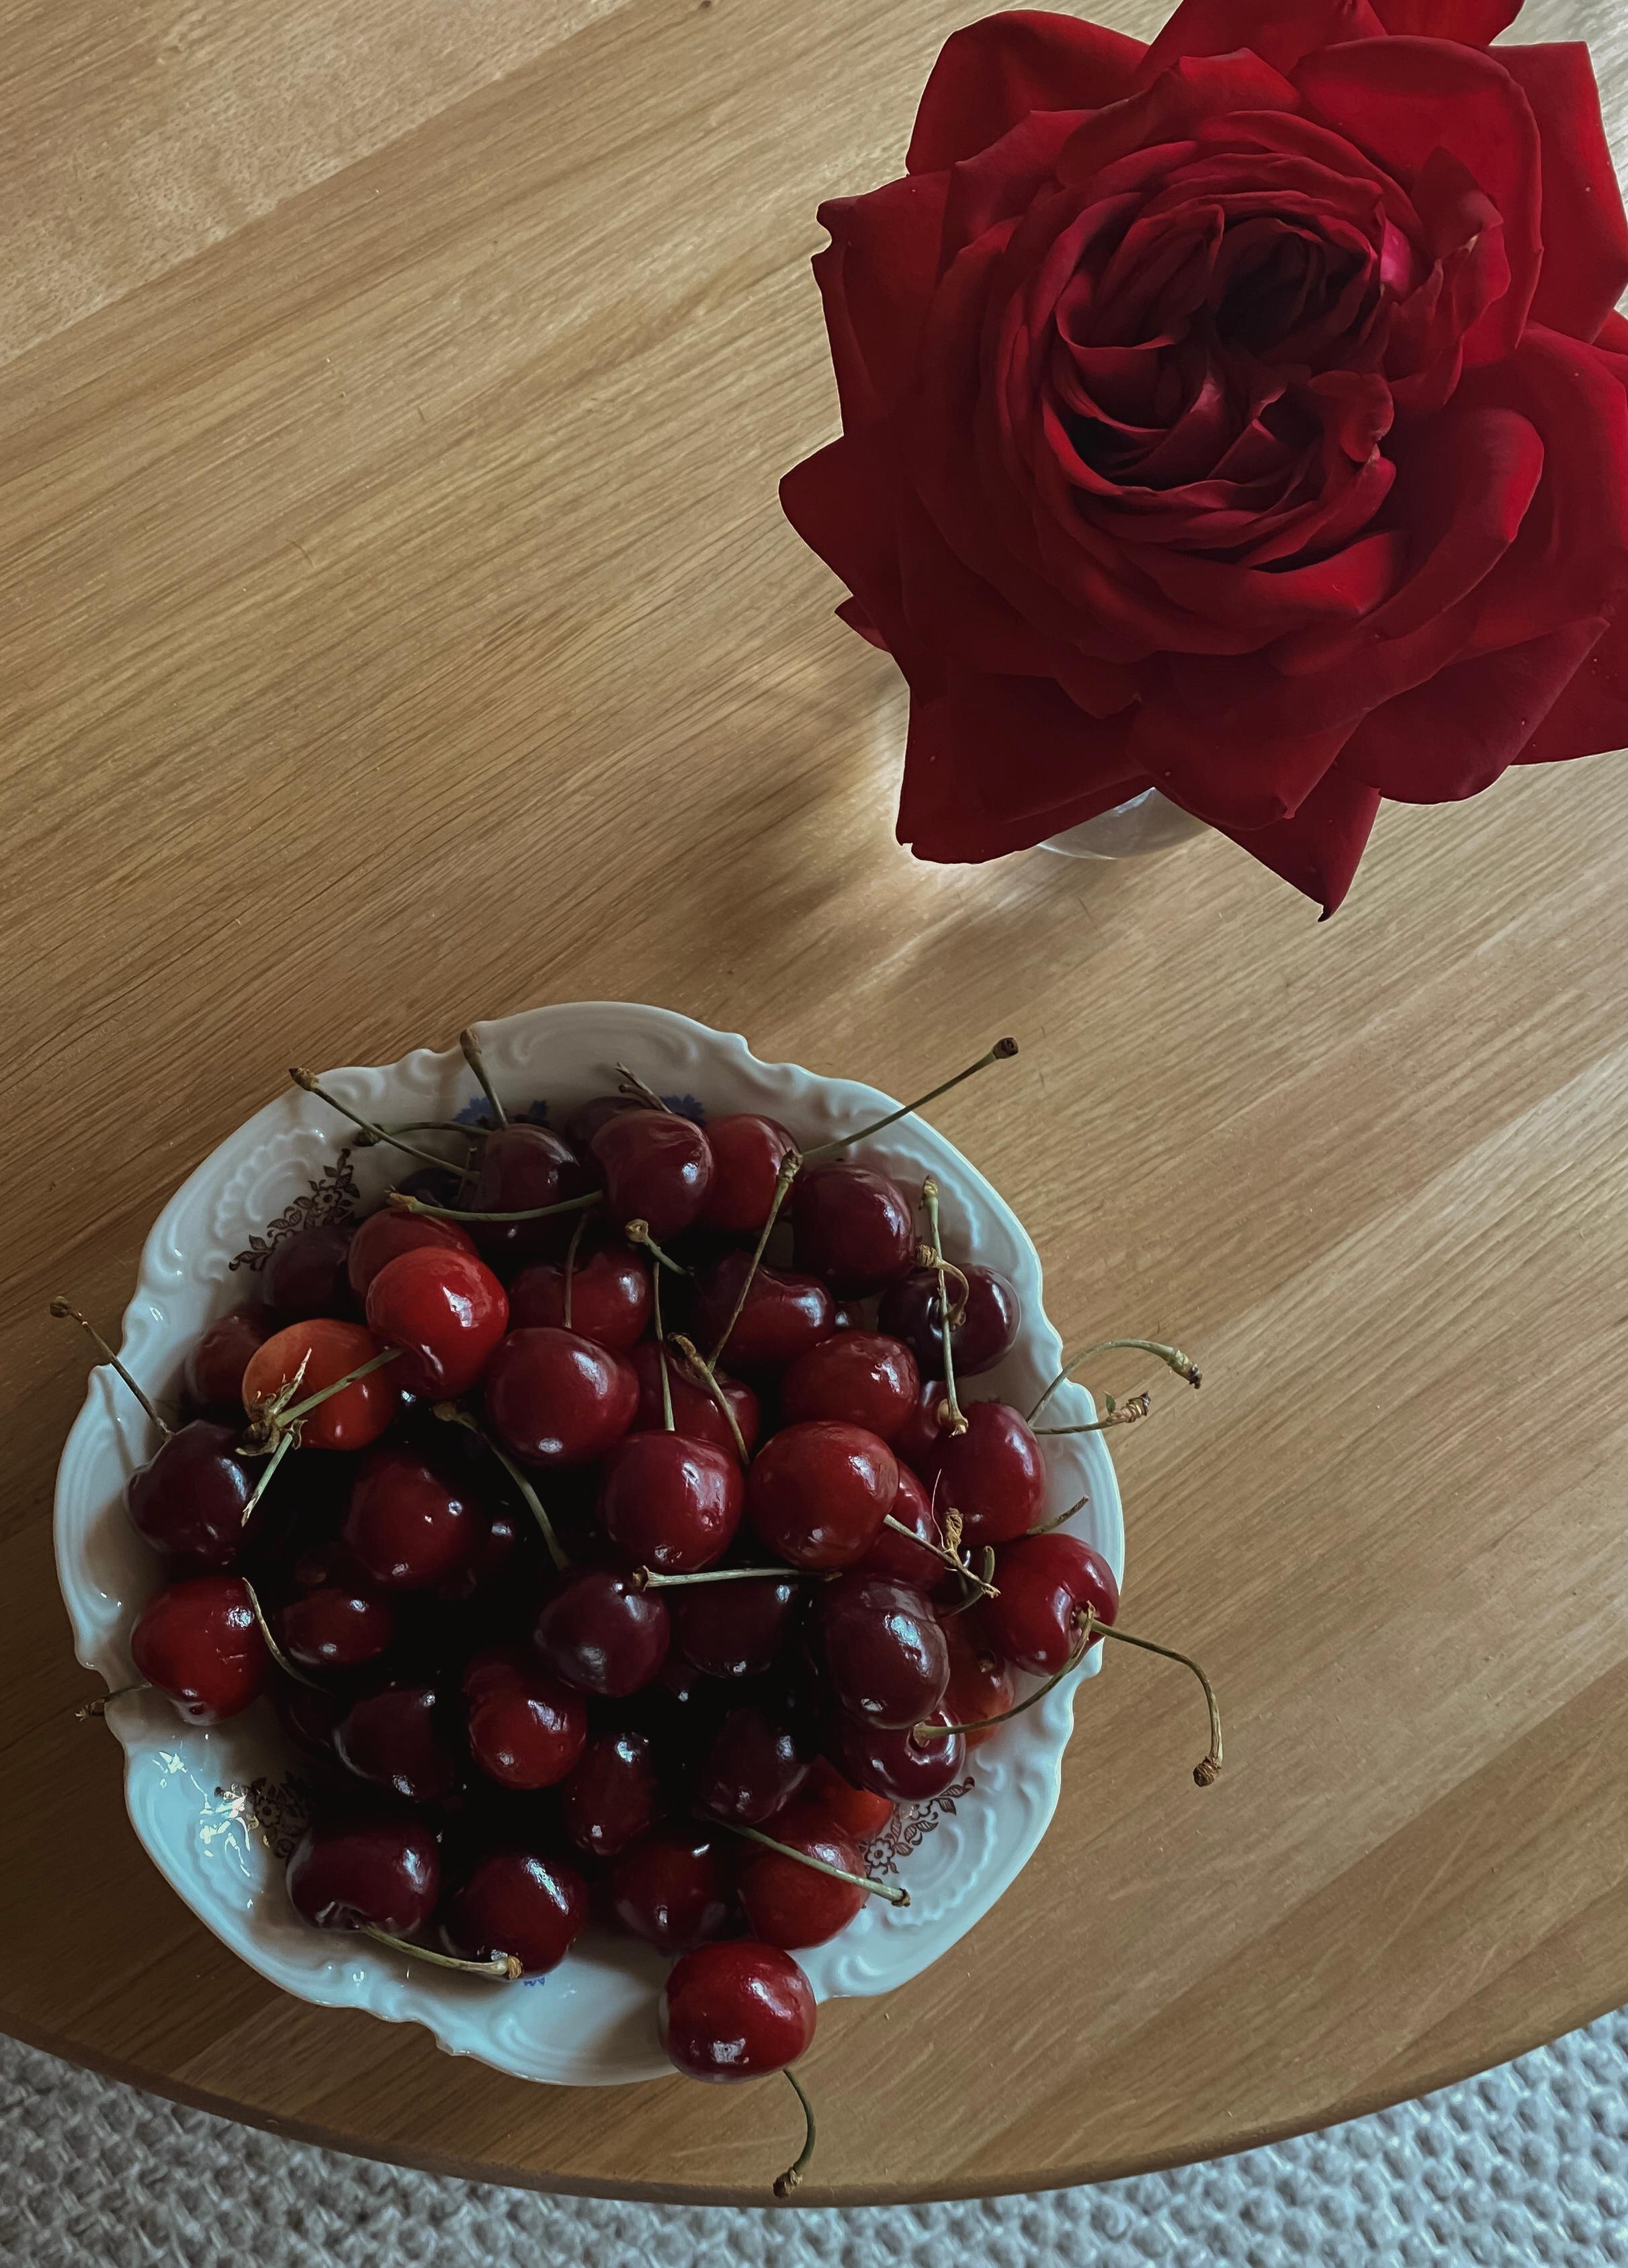 Cherry Cherry Lady 🍒🥀🧸♥️

#sundays #details #cherries #kirschenpflücken #rosesarered #slowliving #interior